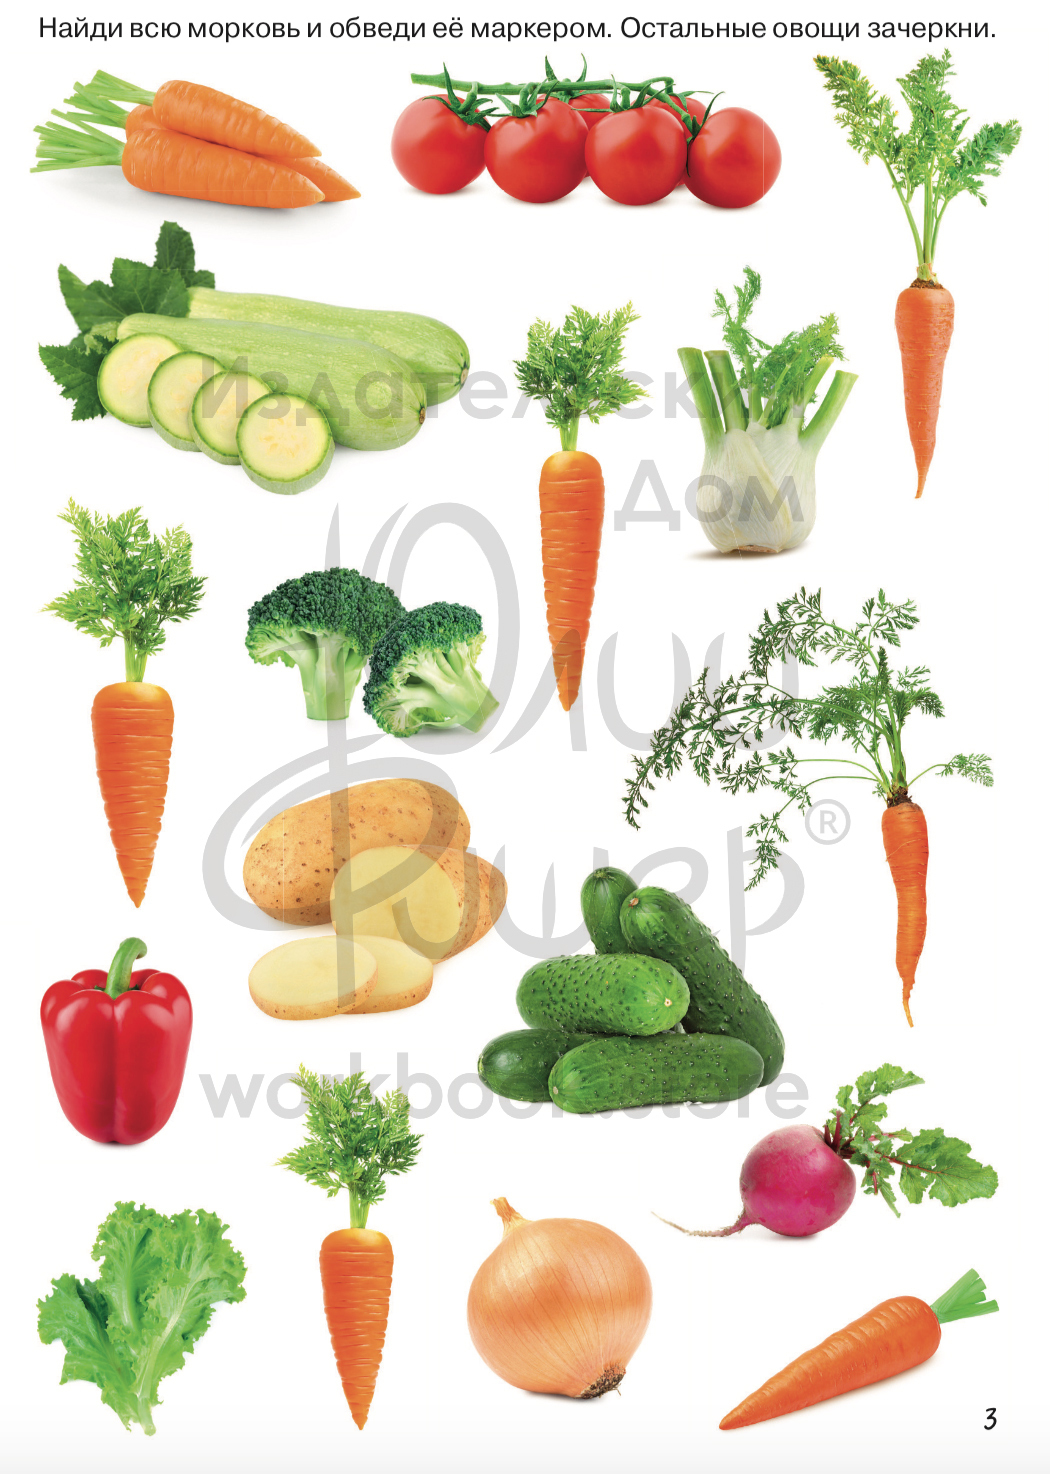 Фигурки овощей и фруктов для детей